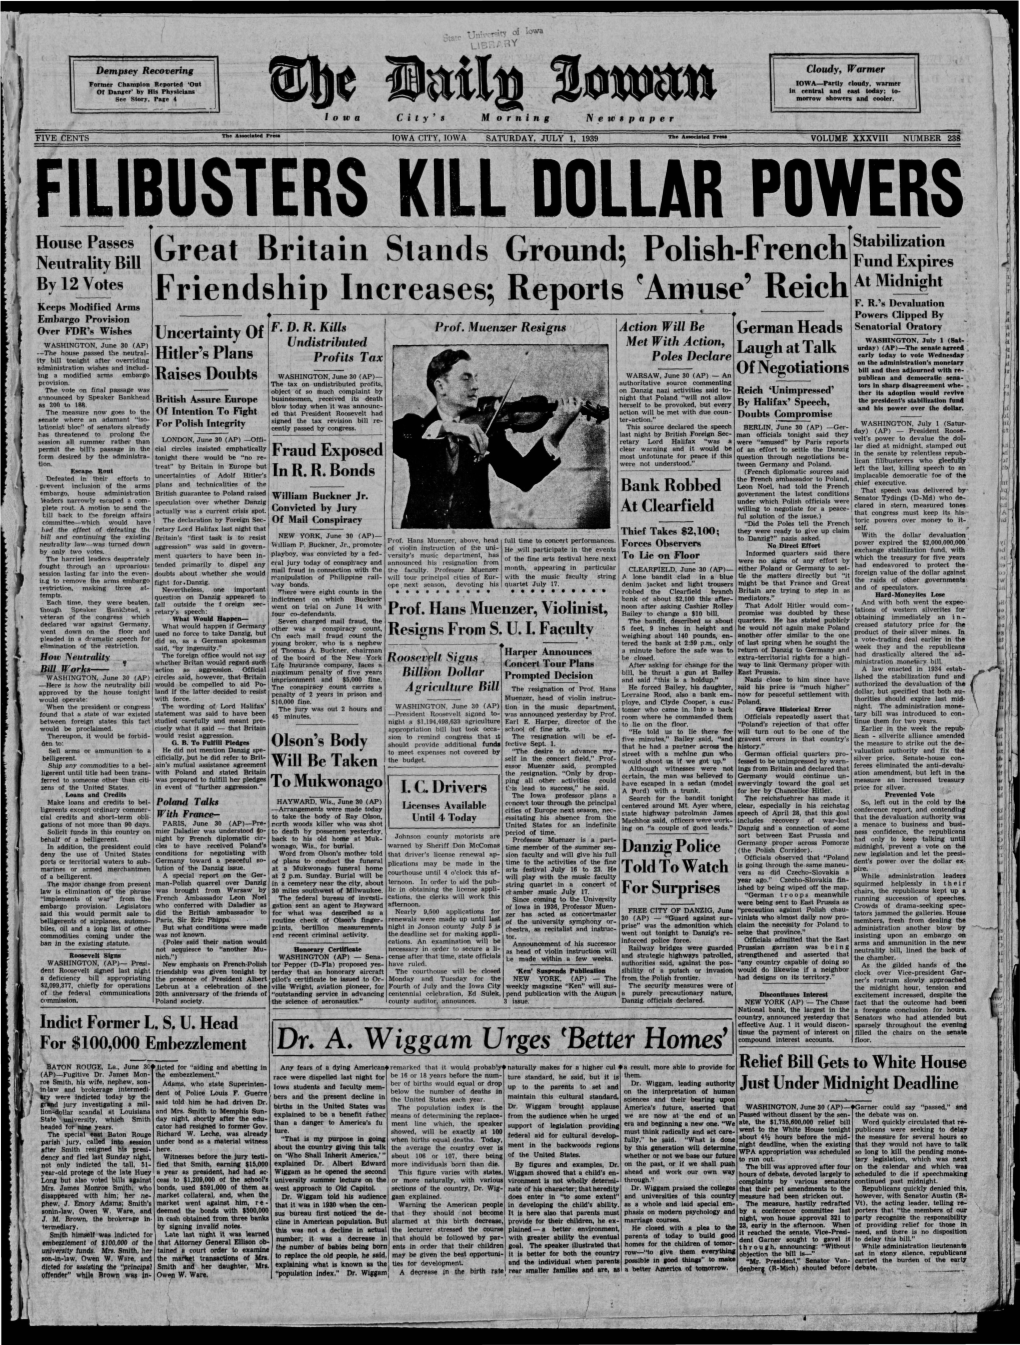 Daily Iowan (Iowa City, Iowa), 1939-07-01